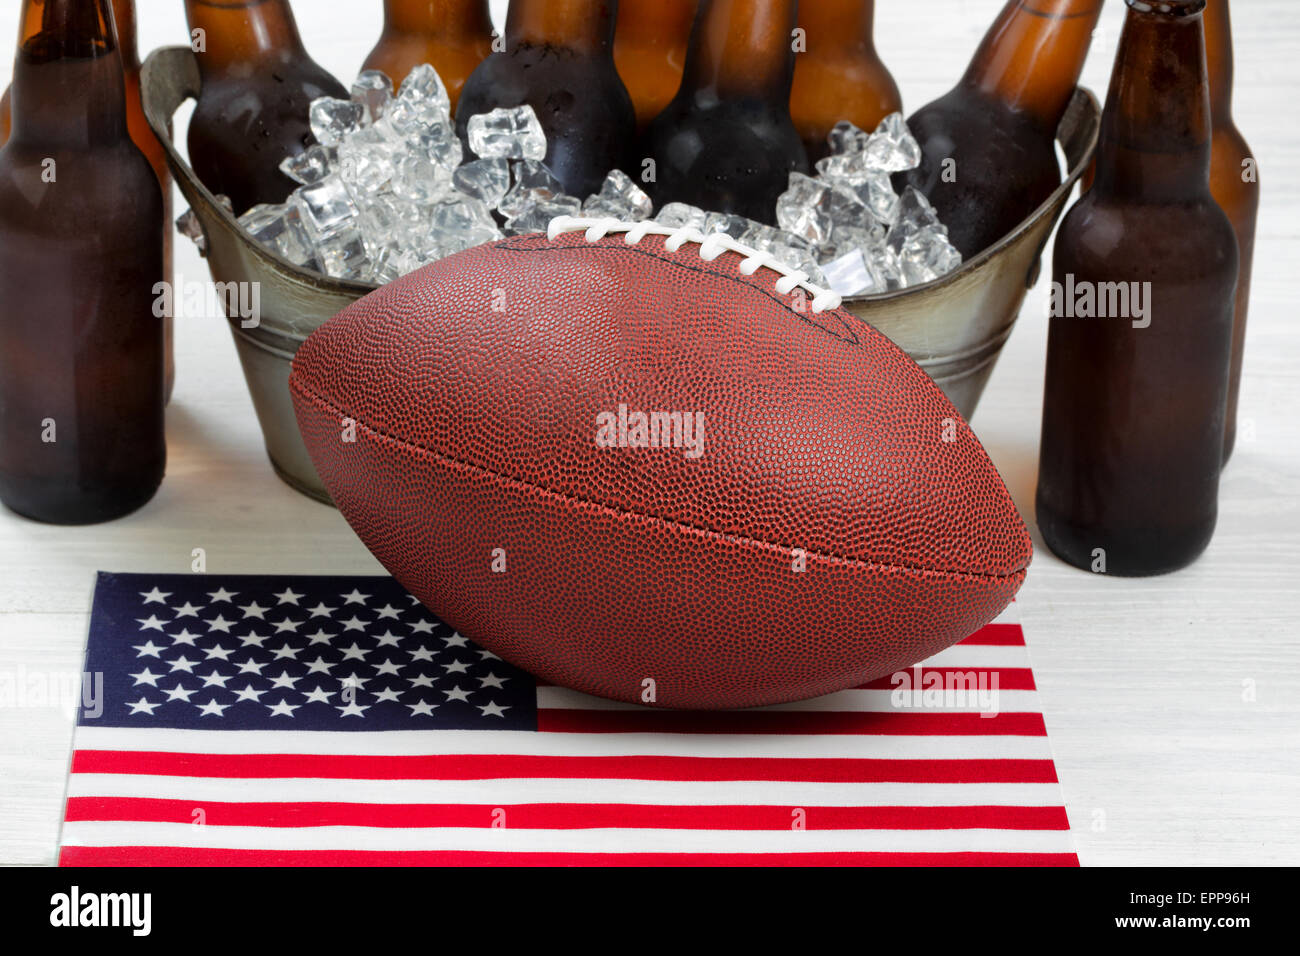 Nahaufnahme des American Football, eiskalten Bier im Eimer und Fahne mit rustikalen weiße Holz darunter. Stockfoto